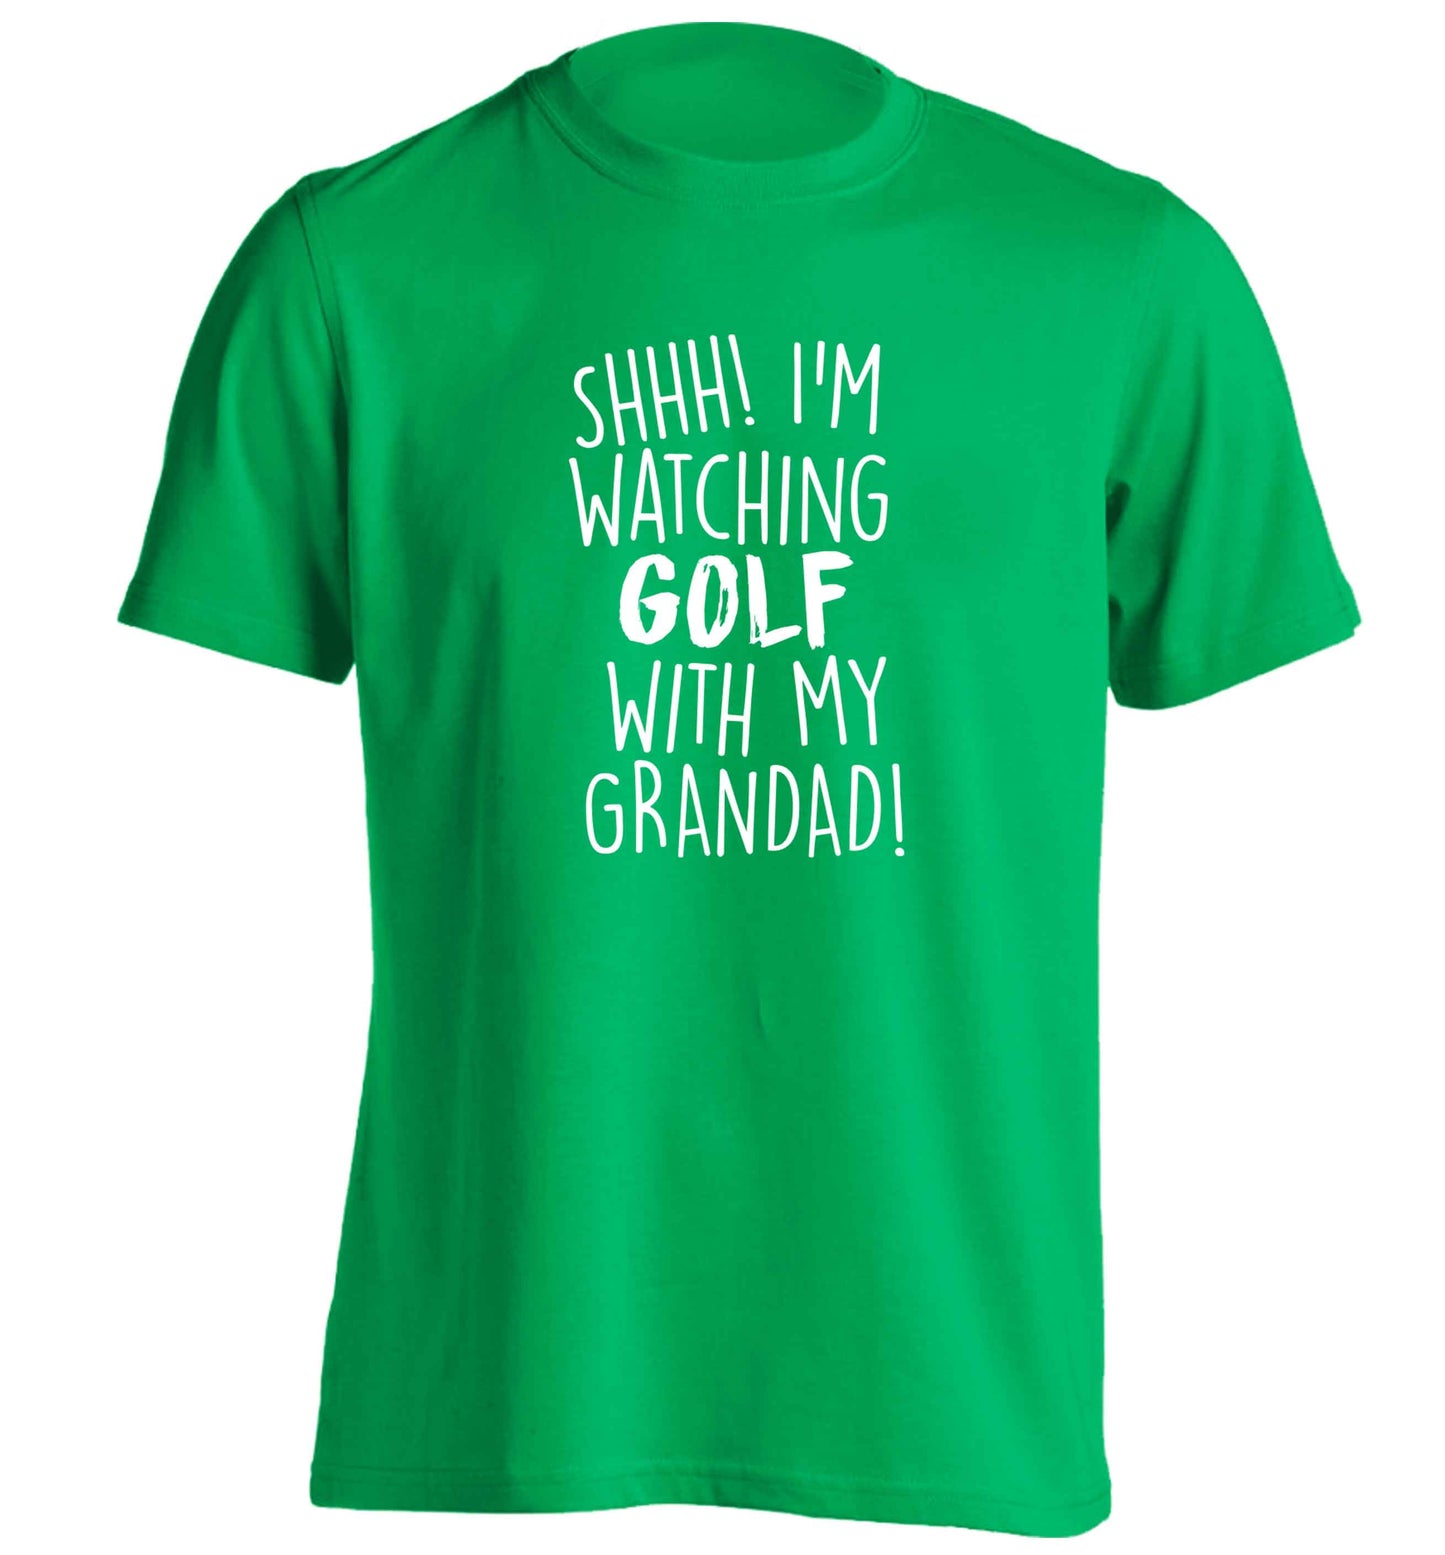 Shh I'm watching golf with my grandad adults unisex green Tshirt 2XL